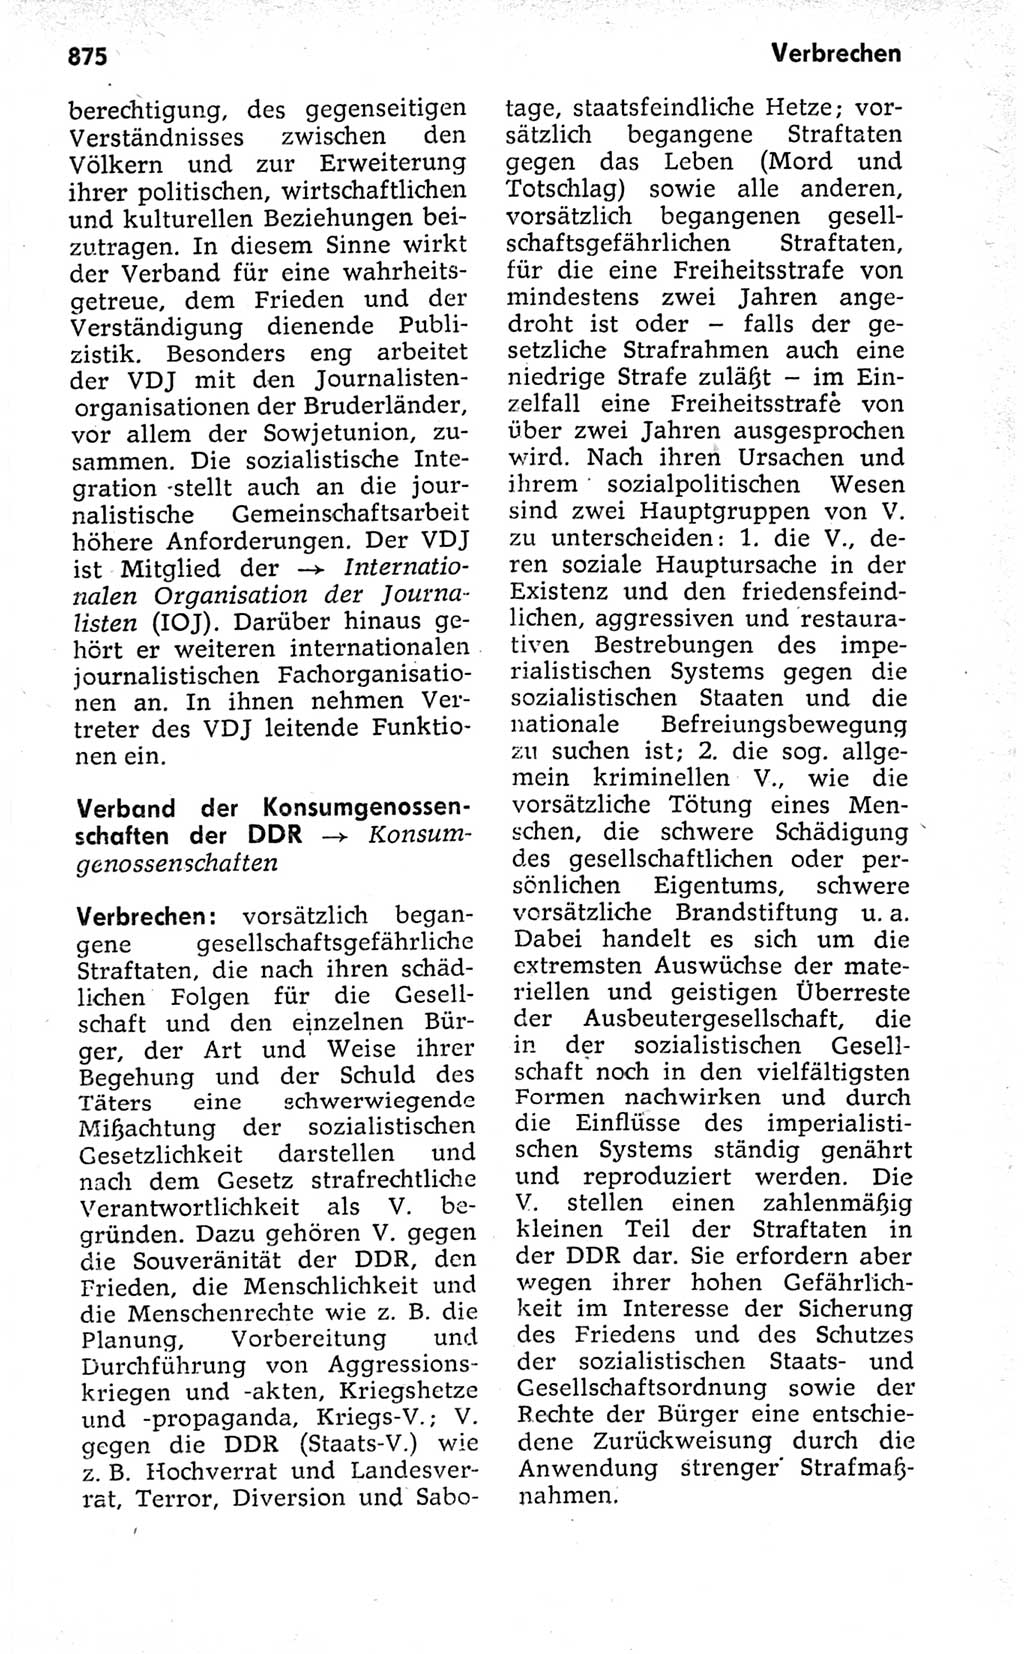 Kleines politisches Wörterbuch [Deutsche Demokratische Republik (DDR)] 1973, Seite 875 (Kl. pol. Wb. DDR 1973, S. 875)